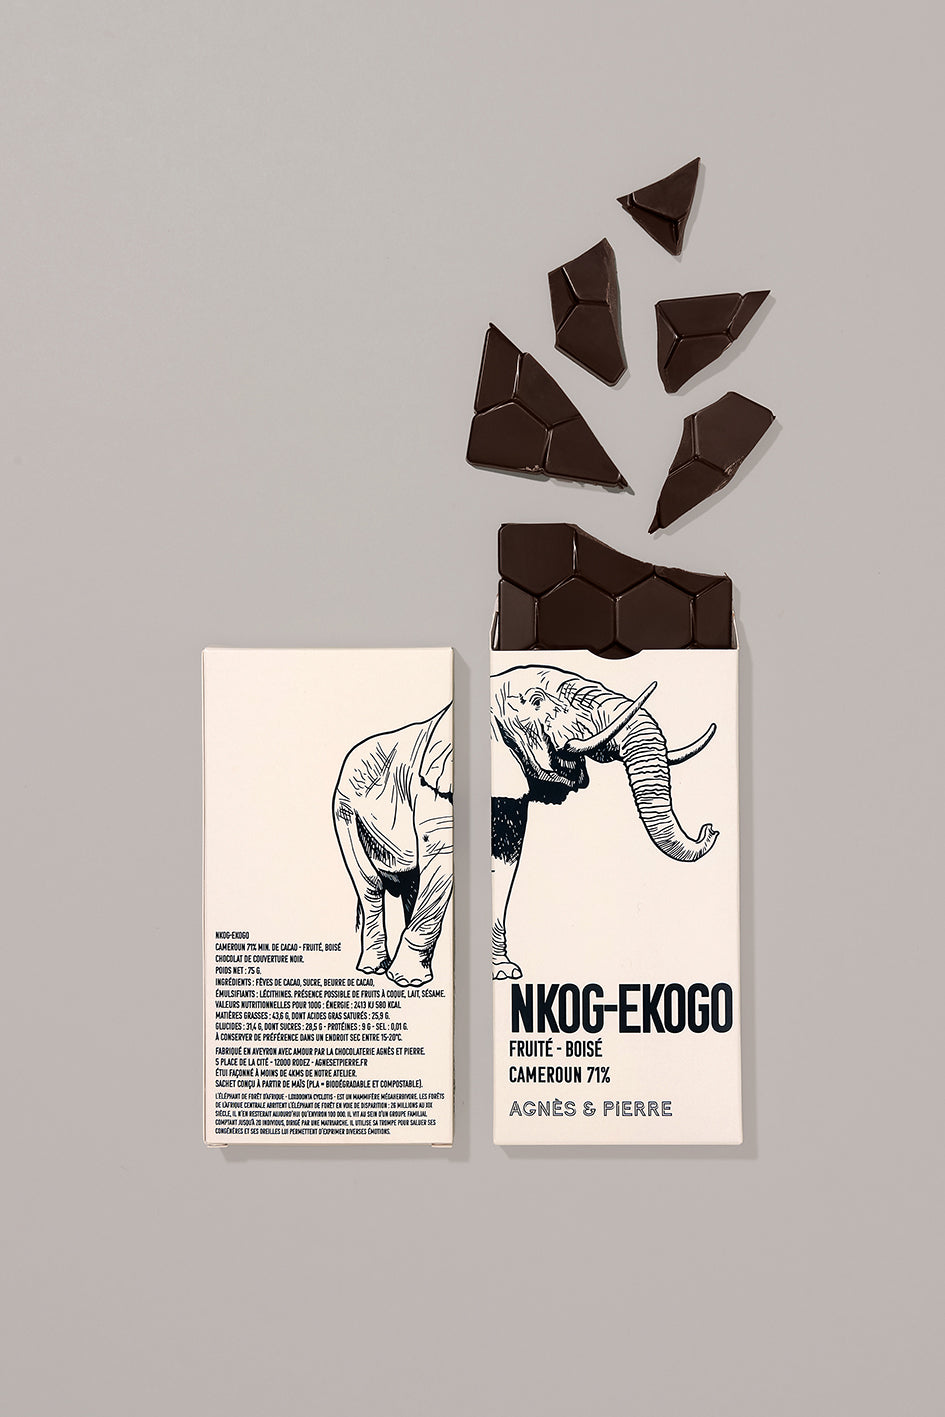 NKOG-EKOGO CAMEROUN 71%